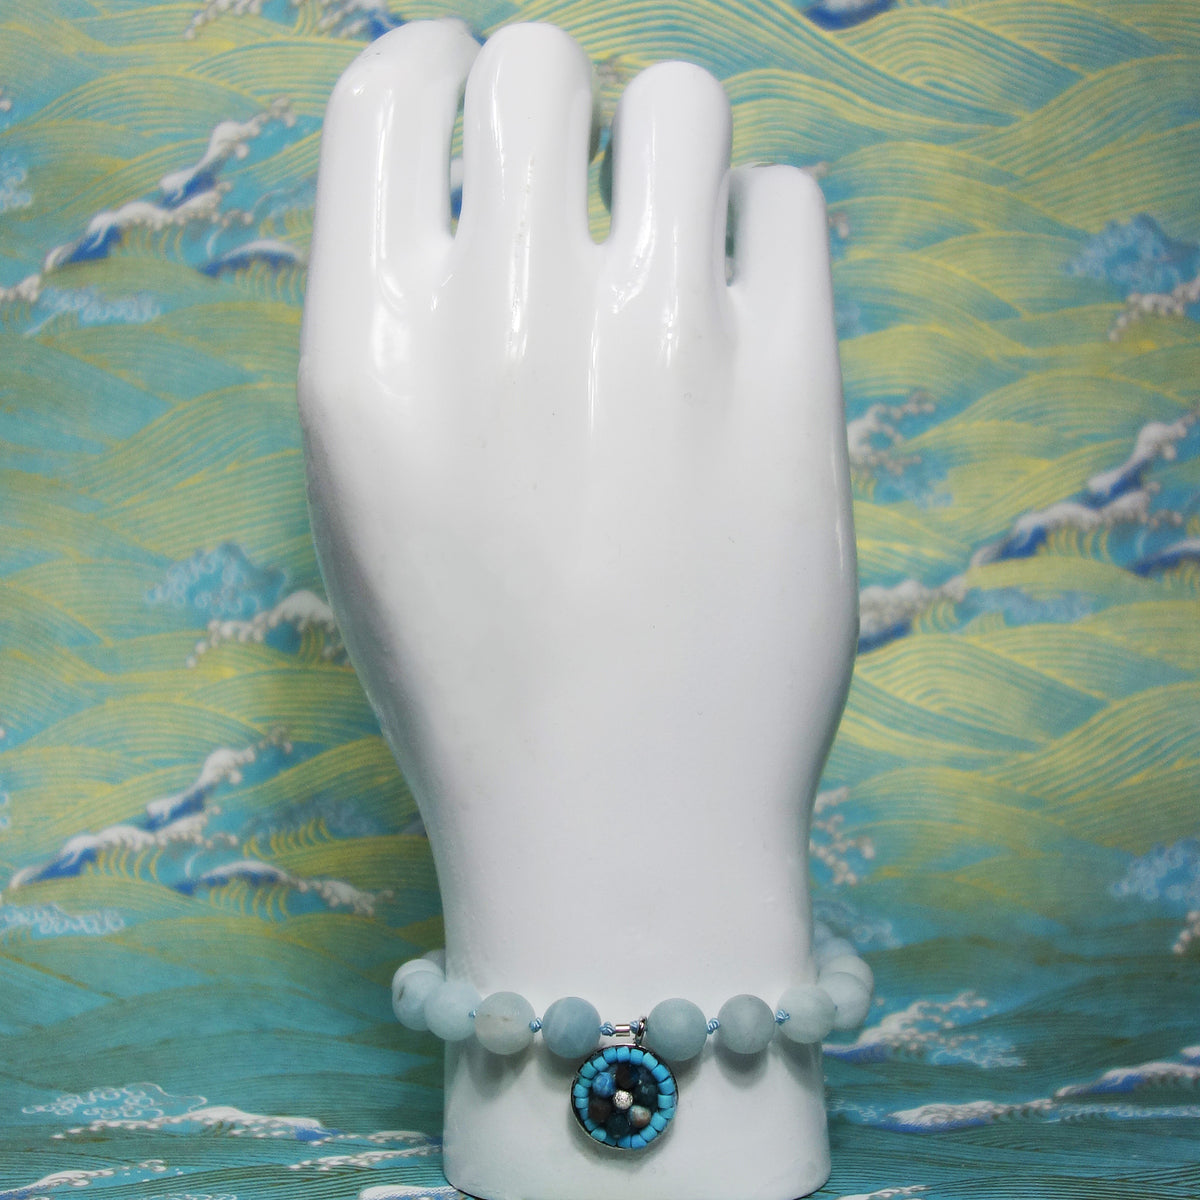 Aquamarine and turquoise mosaic bracelet